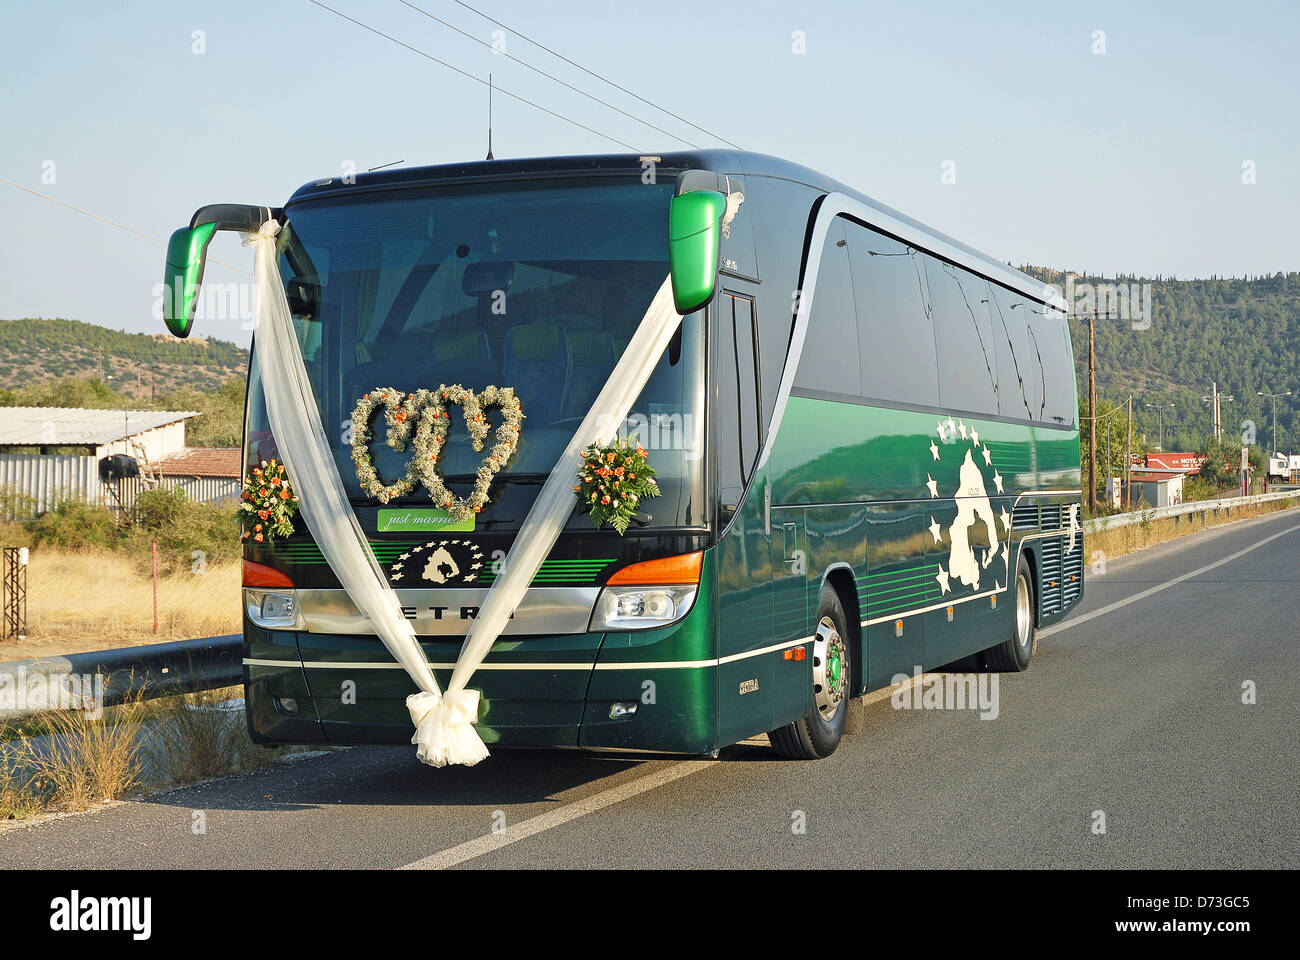 Décorées de bus pour le mariage d'un conducteur de bus Grec Banque D'Images